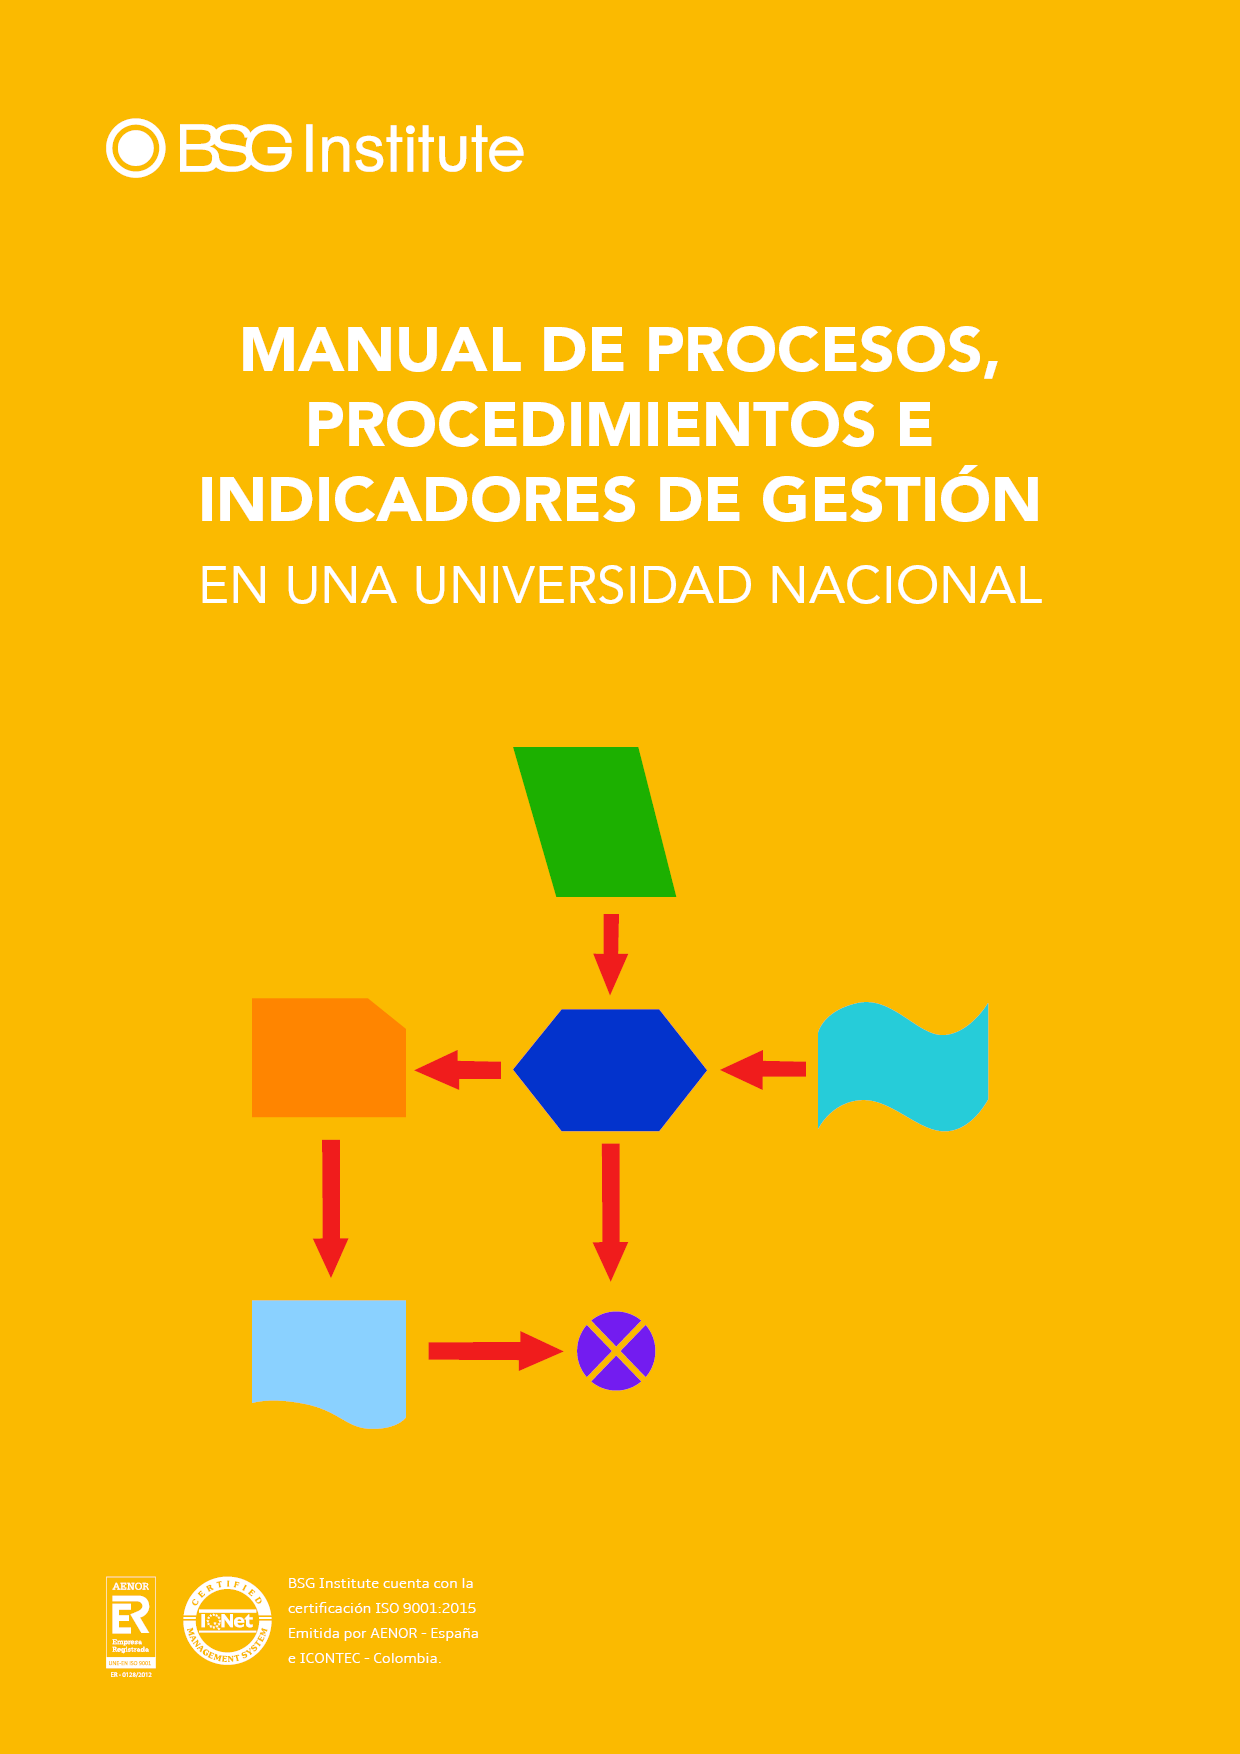 Manual de Procesos, Procedimientos e Indicadores de Gestión en una Universidad Nacional